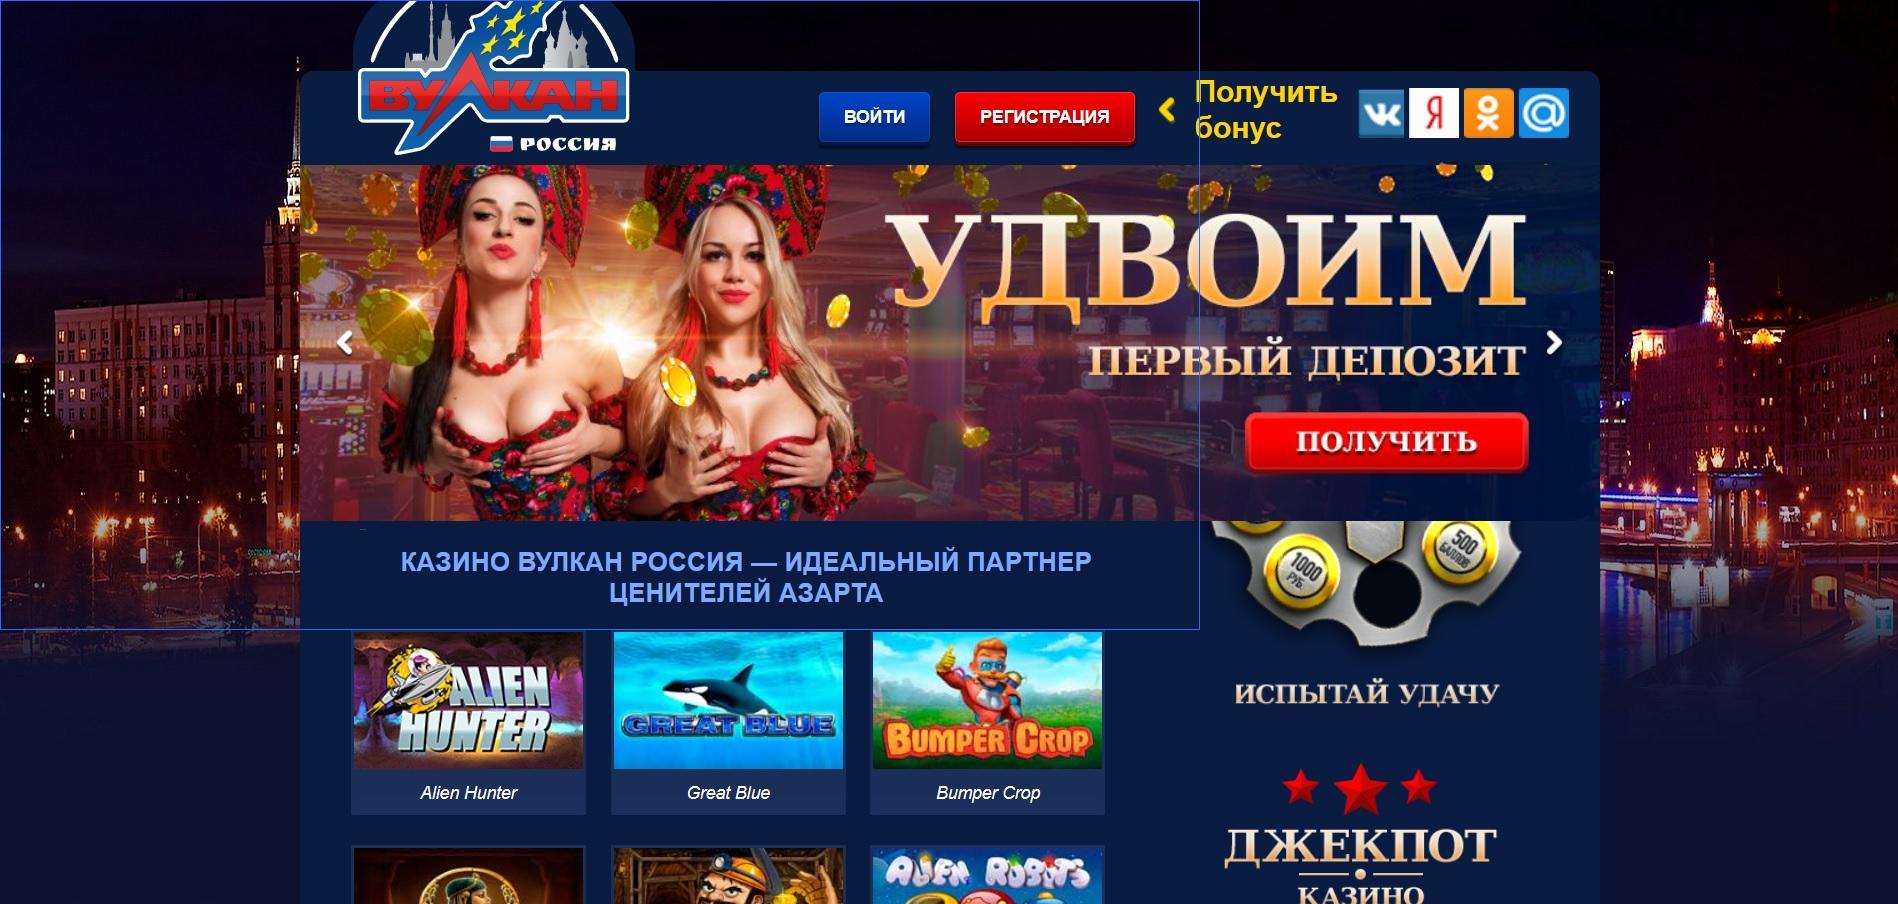 Онлайн казино вулкан бонусы без депозита игровой клуб игровые автоматы россия покердом промокод poker win